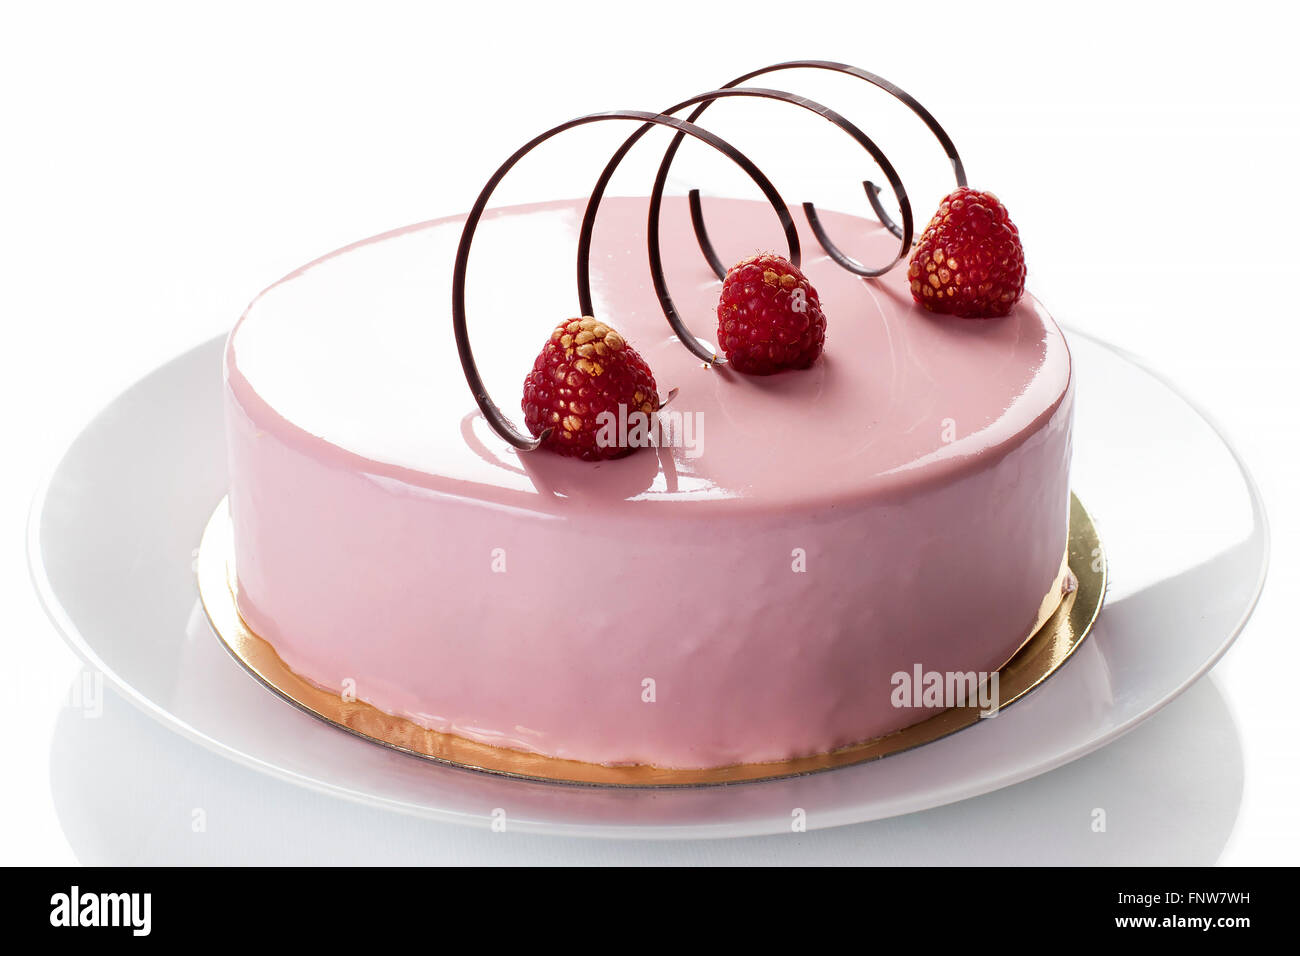 Pasta: Lampone torta con gelatine e souffle. Isolato su bianco - immagine di stock Foto Stock